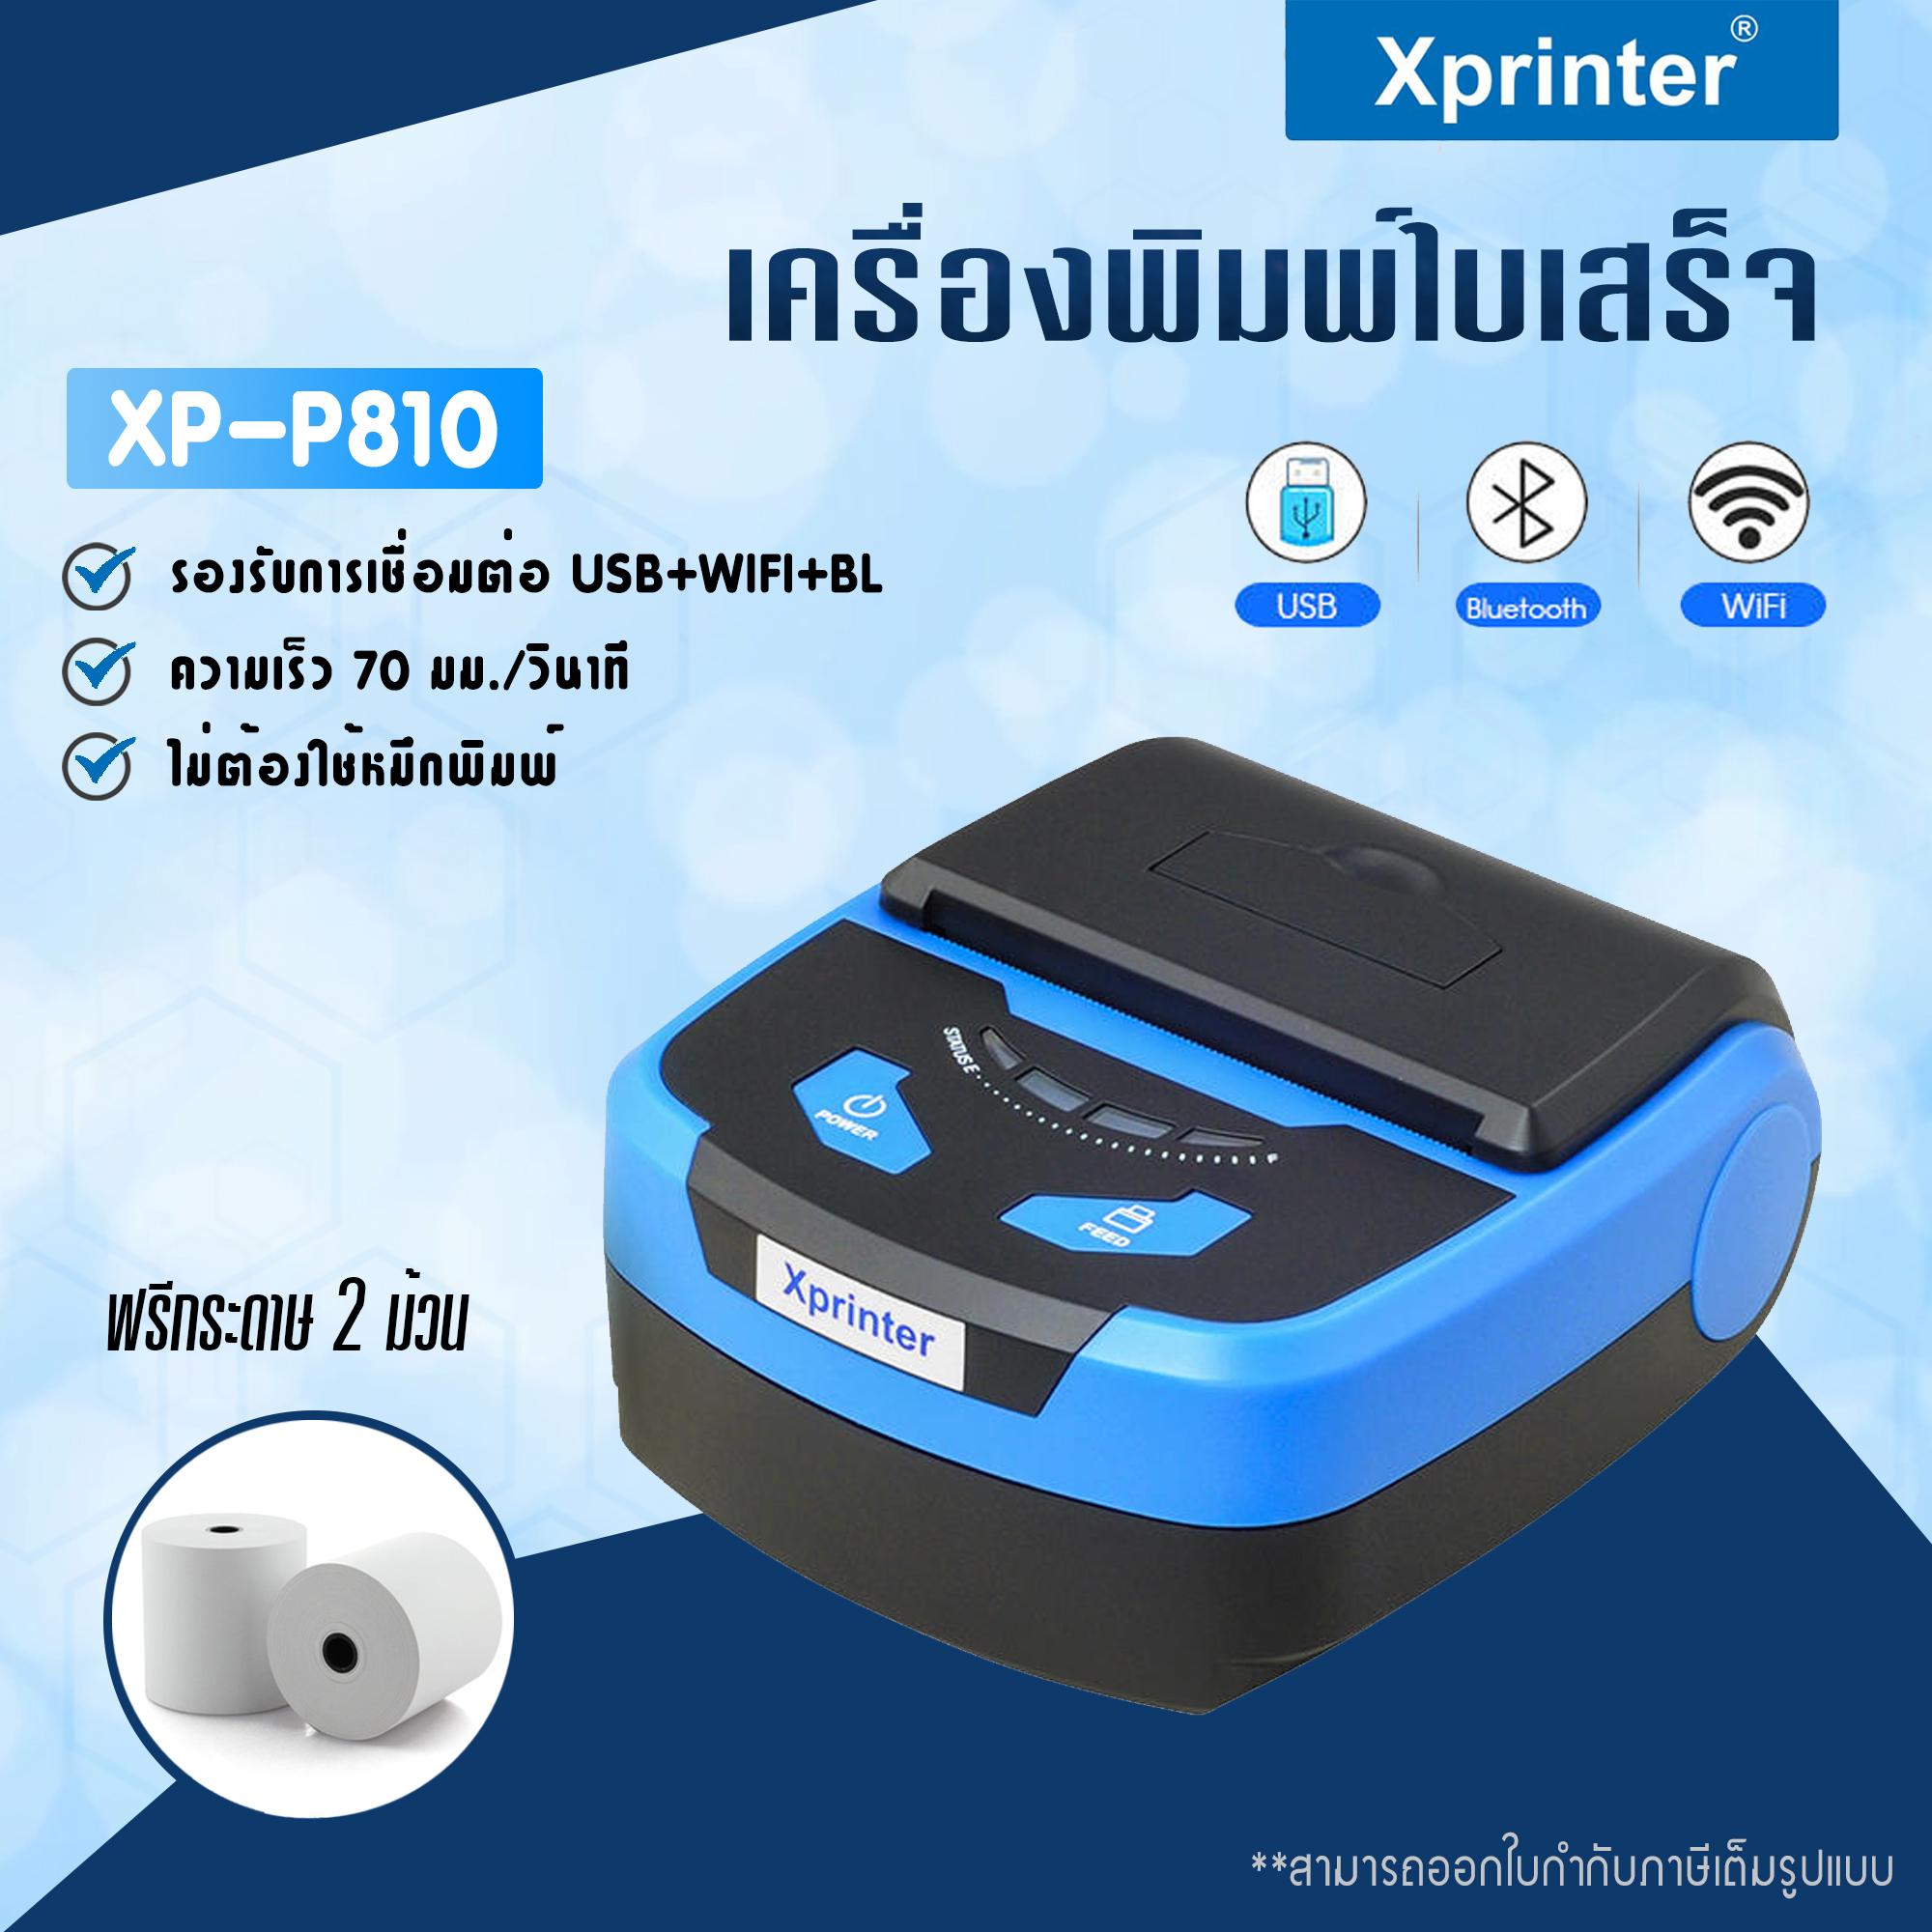 เครื่องพิมพ์ใบเสร็จ Xprinter รุ่น XP-P810 รองรับขนาด 80 มม. เชื่อมต่อผ่านไวไฟ+บลูทูธ (Receipt Printer Thermal 80 mm.WIFI+BL connect)